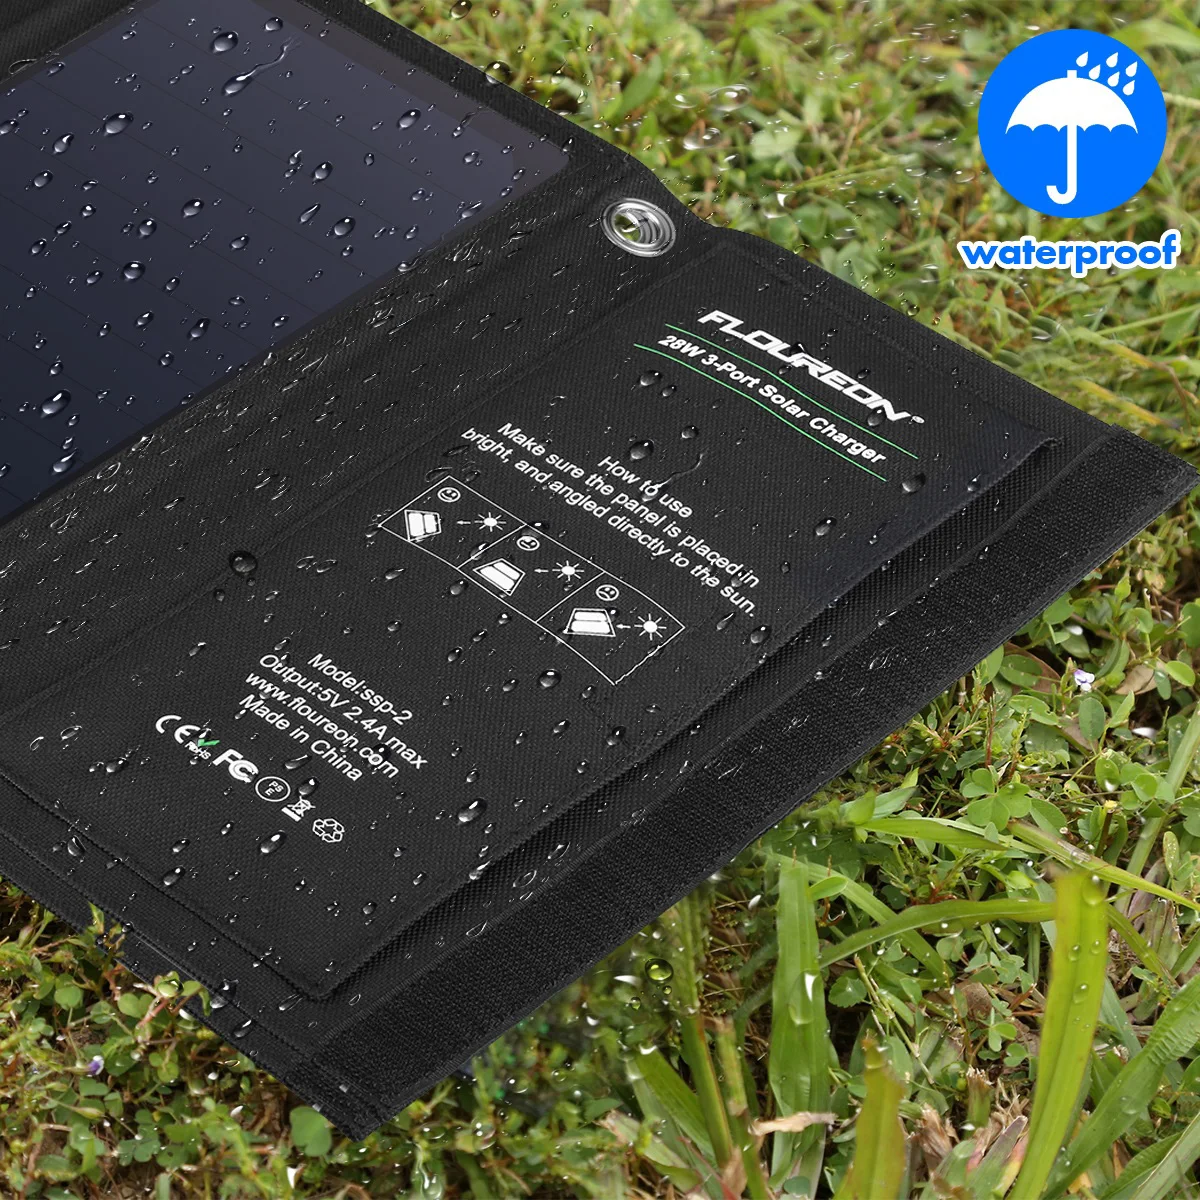 FLOUREON 28 Вт Складная солнечная панель Зарядное устройство водонепроницаемый мобильный банк питания с 3 портами usb для смартфонов Xiaomi планшеты кемпинг